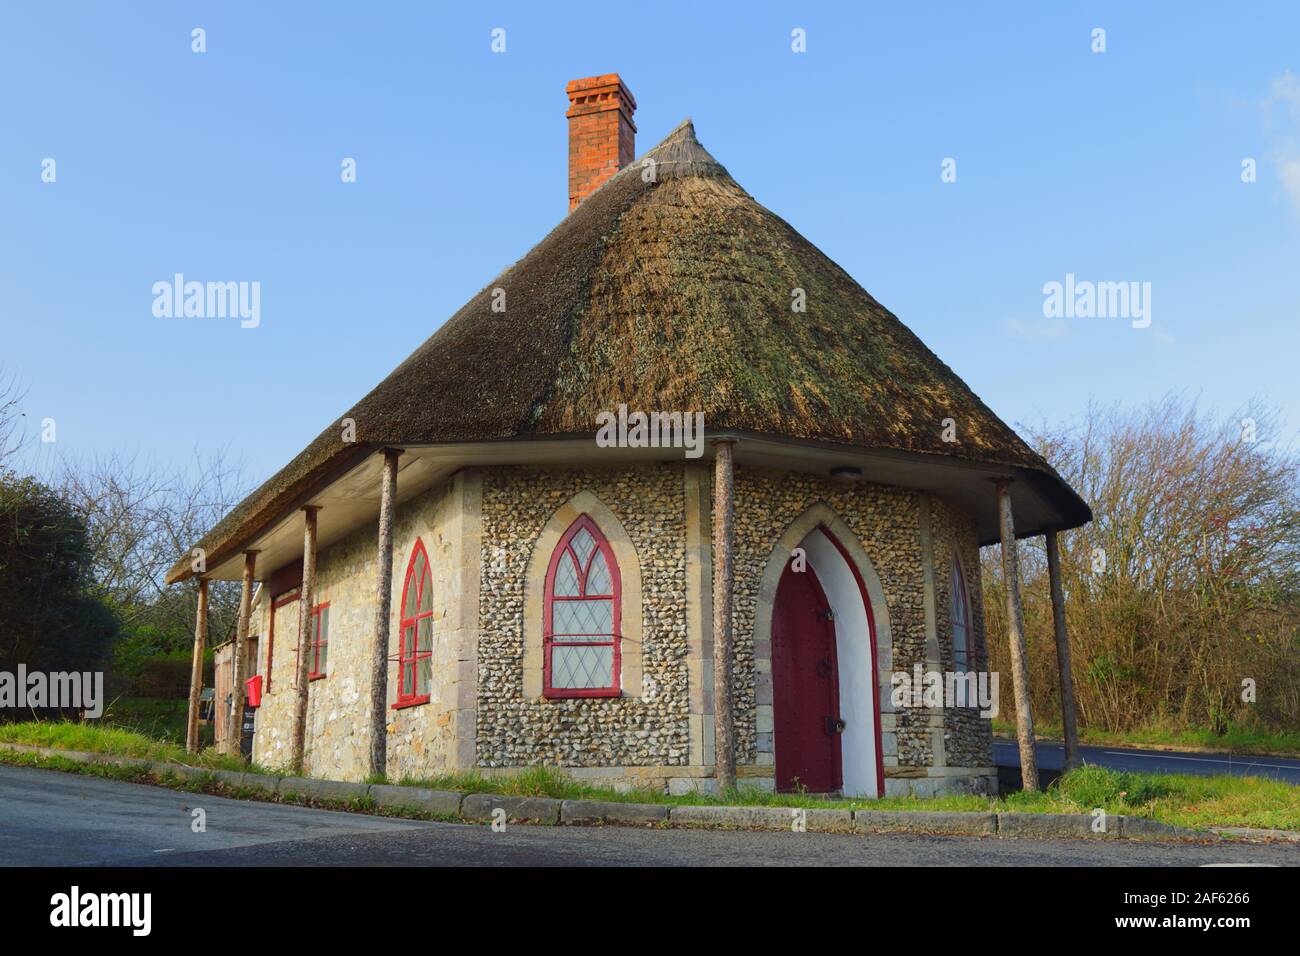 La vecchia casa di pedaggio vicino a Chard in Somerset. Cottage con il tetto di paglia è stata costruita nel 1839 in stile gotico in stile revival è un edificio classificato Grade II. Foto Stock